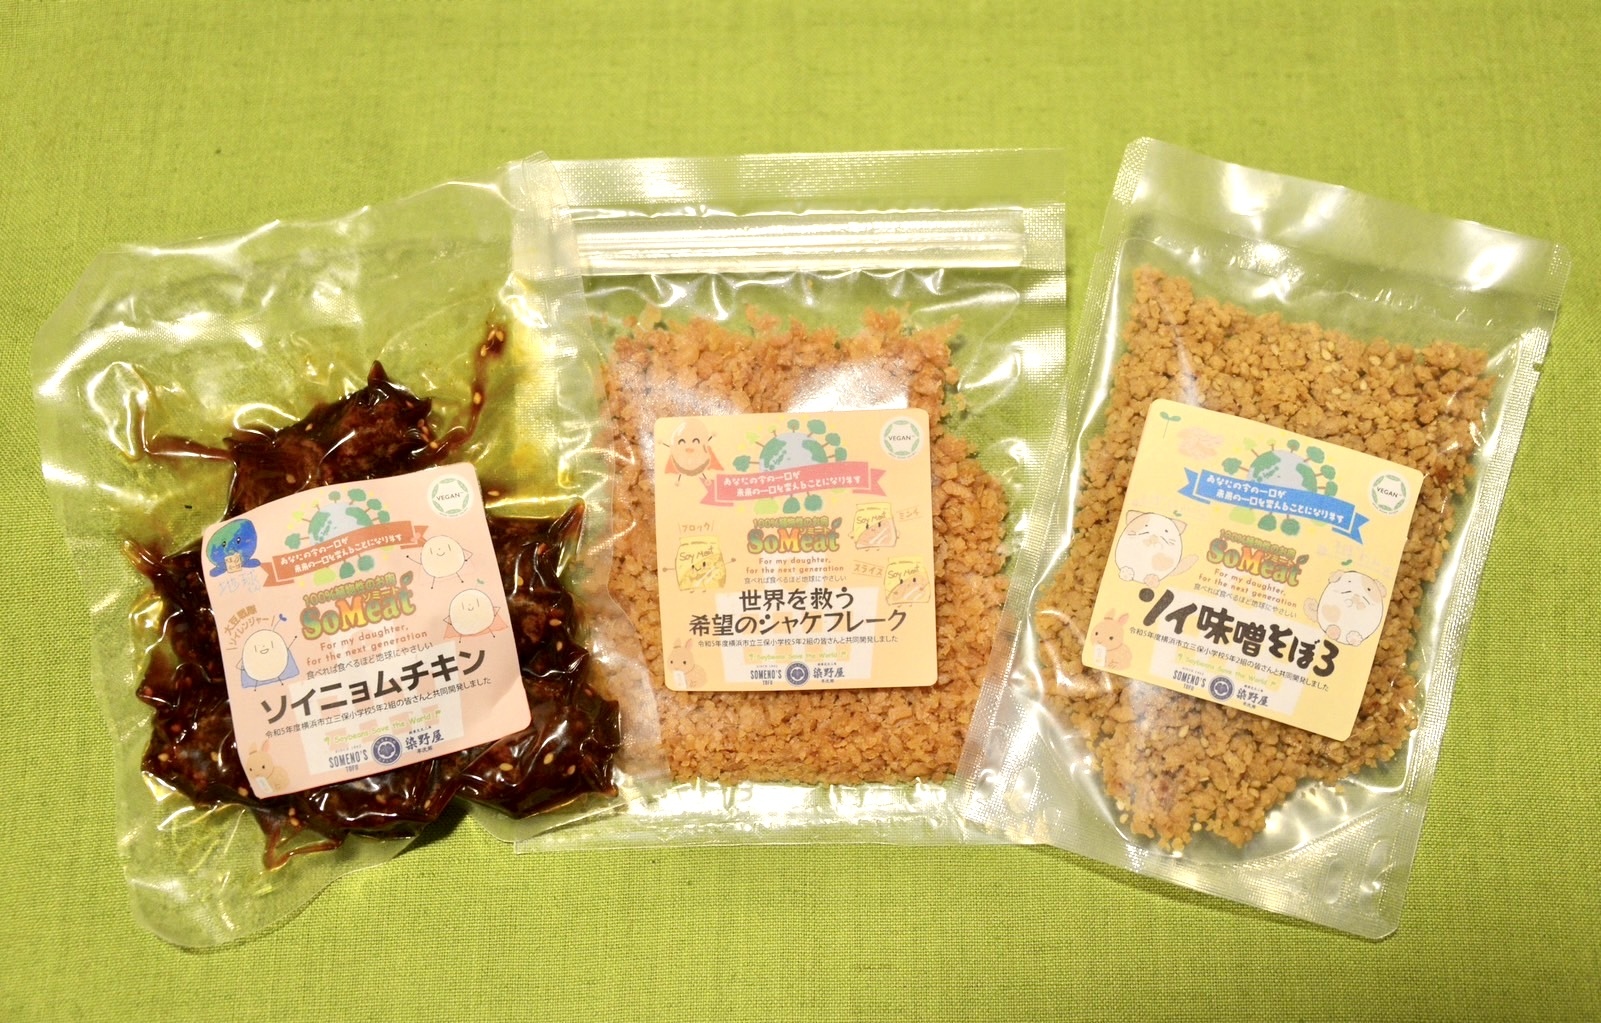 富山県“氷見”の新たな土産商品に。地元産の米粉を活かした
グルテンフリーのフィナンシェを新発売！